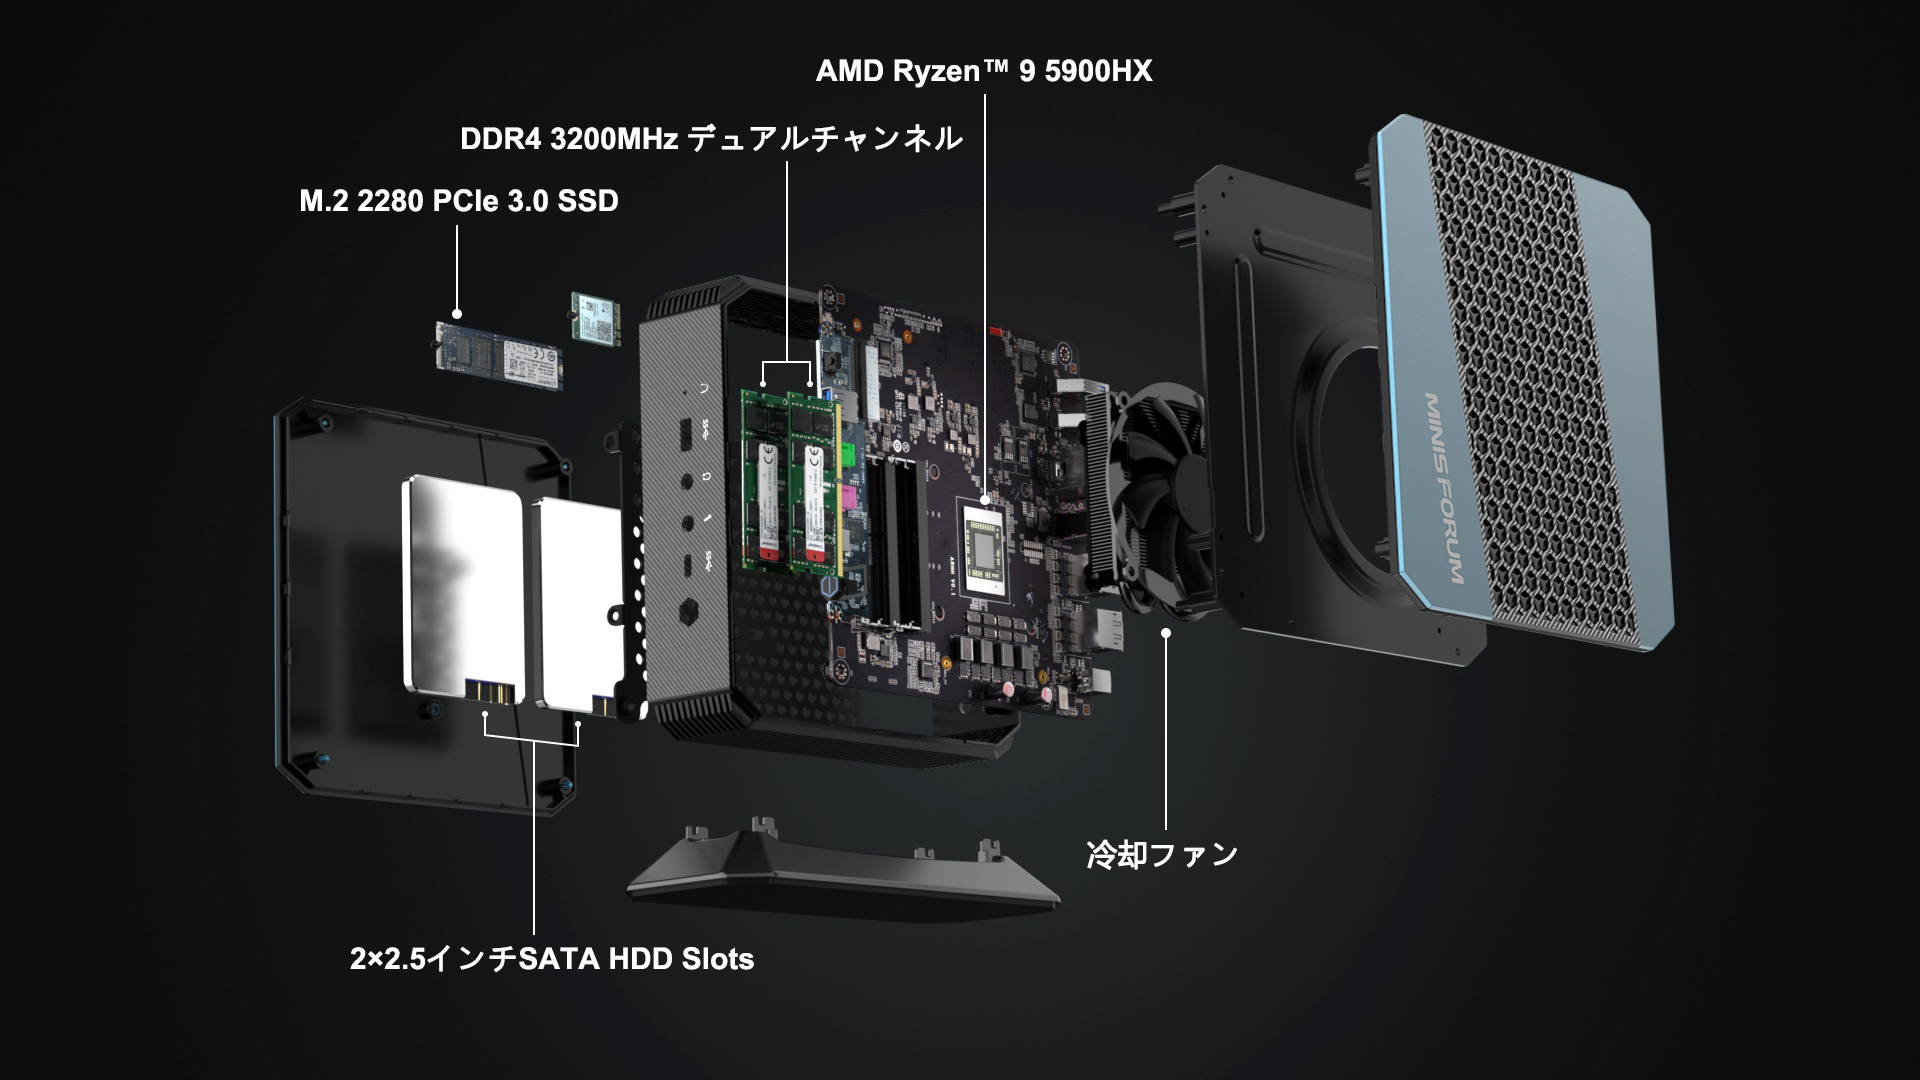 Minisforum EliteMini HX90 AMD Ryzen 9 5900HX Mini PC – Minisforum JP